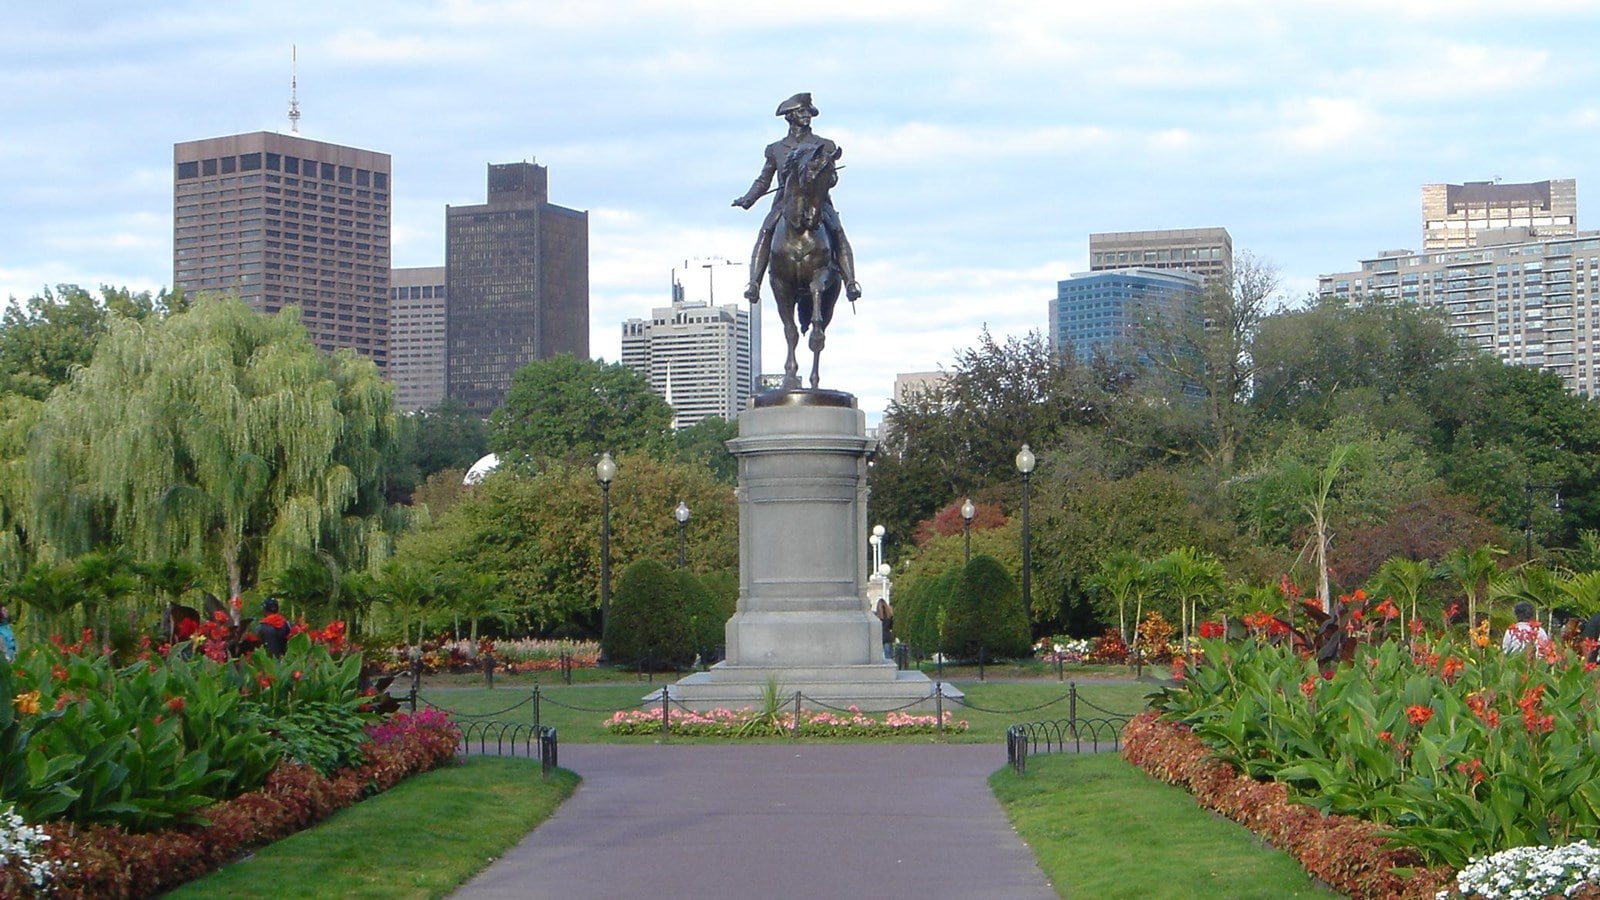 Boston Common and the Public Garden